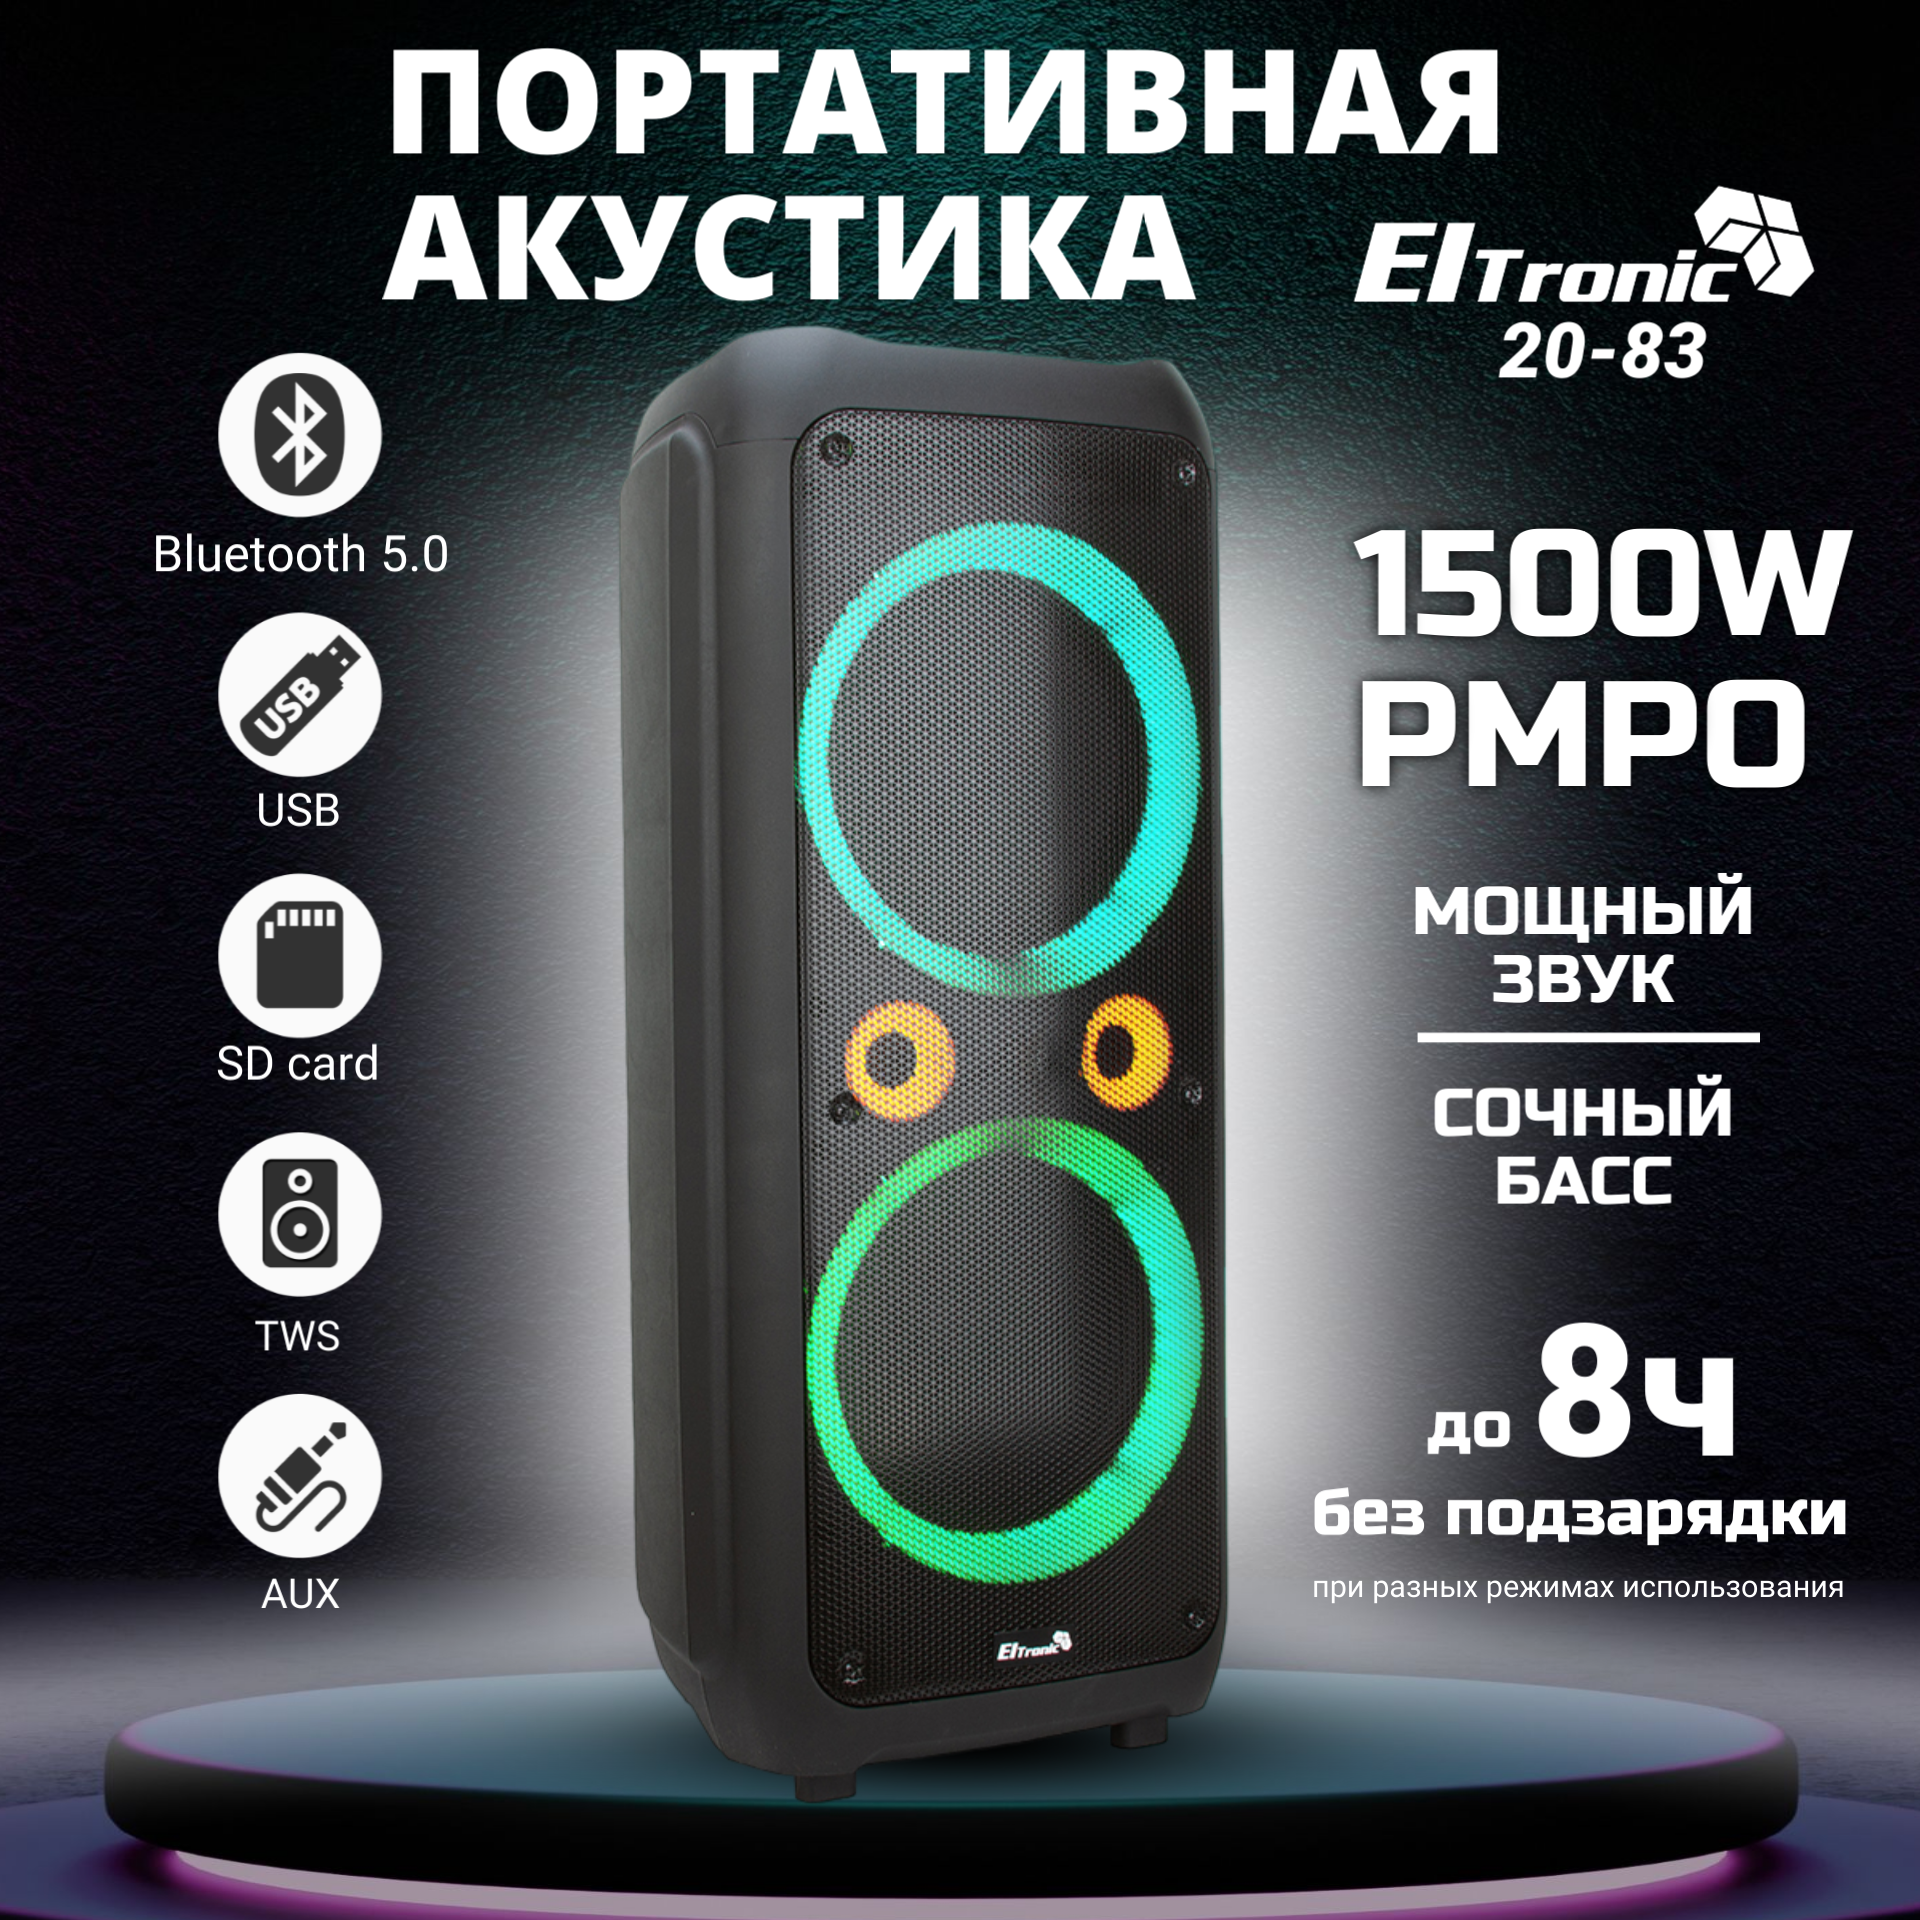 Портативная акустика Eltronic 20-83 DANCE BOX 1500 с TWS купить в Красноярске